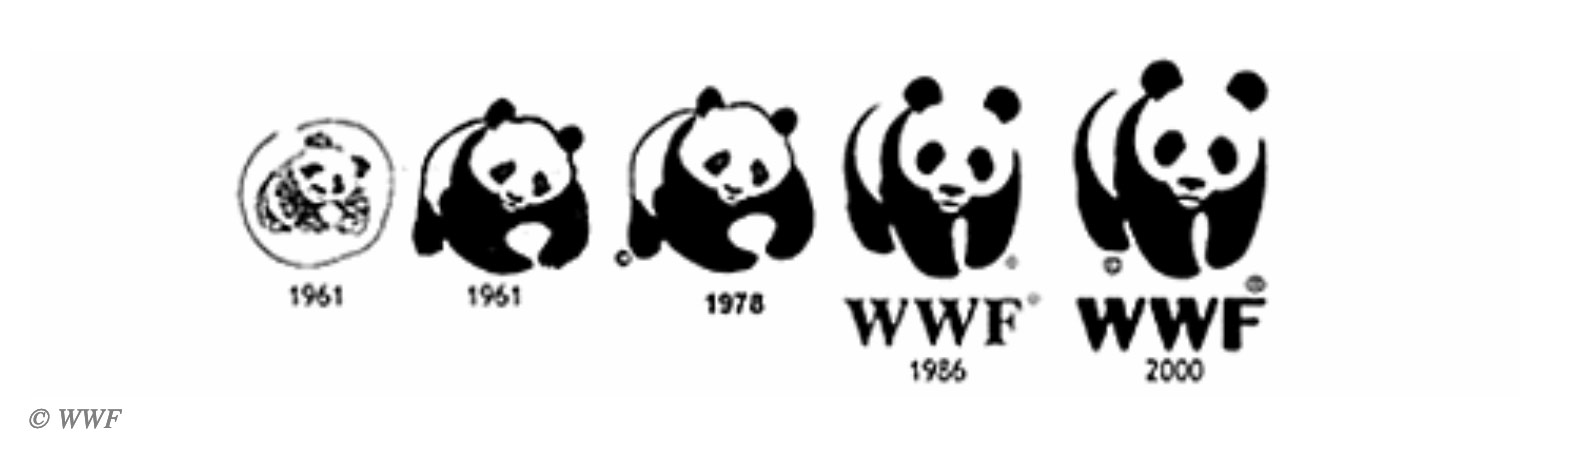 История логотипа WWF